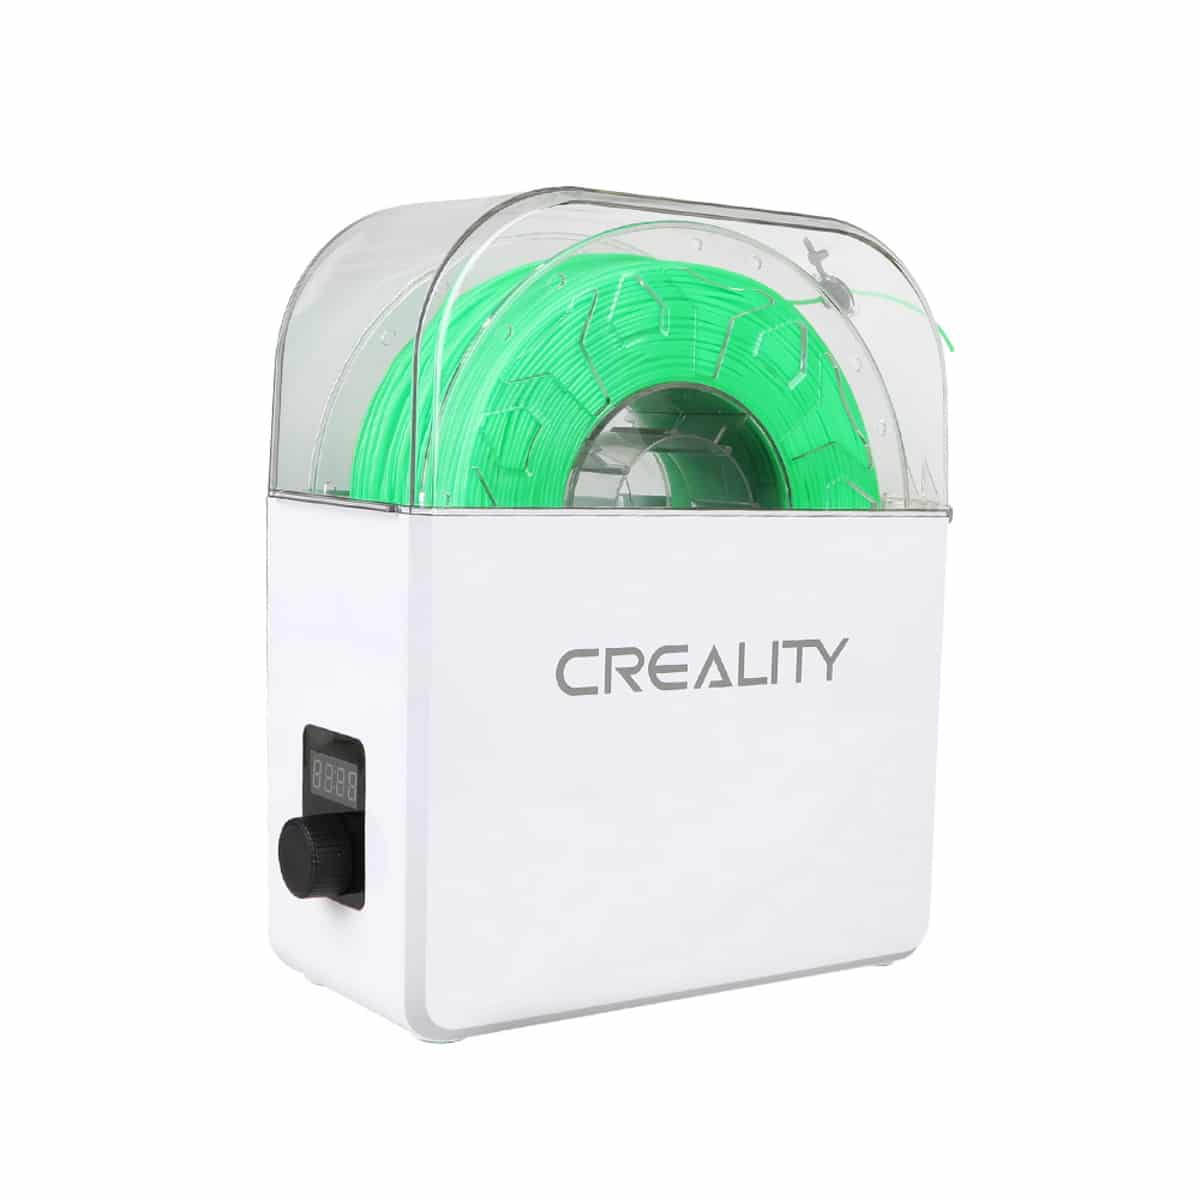 Køb Creality Filament Dry Box 3d printer - Pris 349.00 kr.